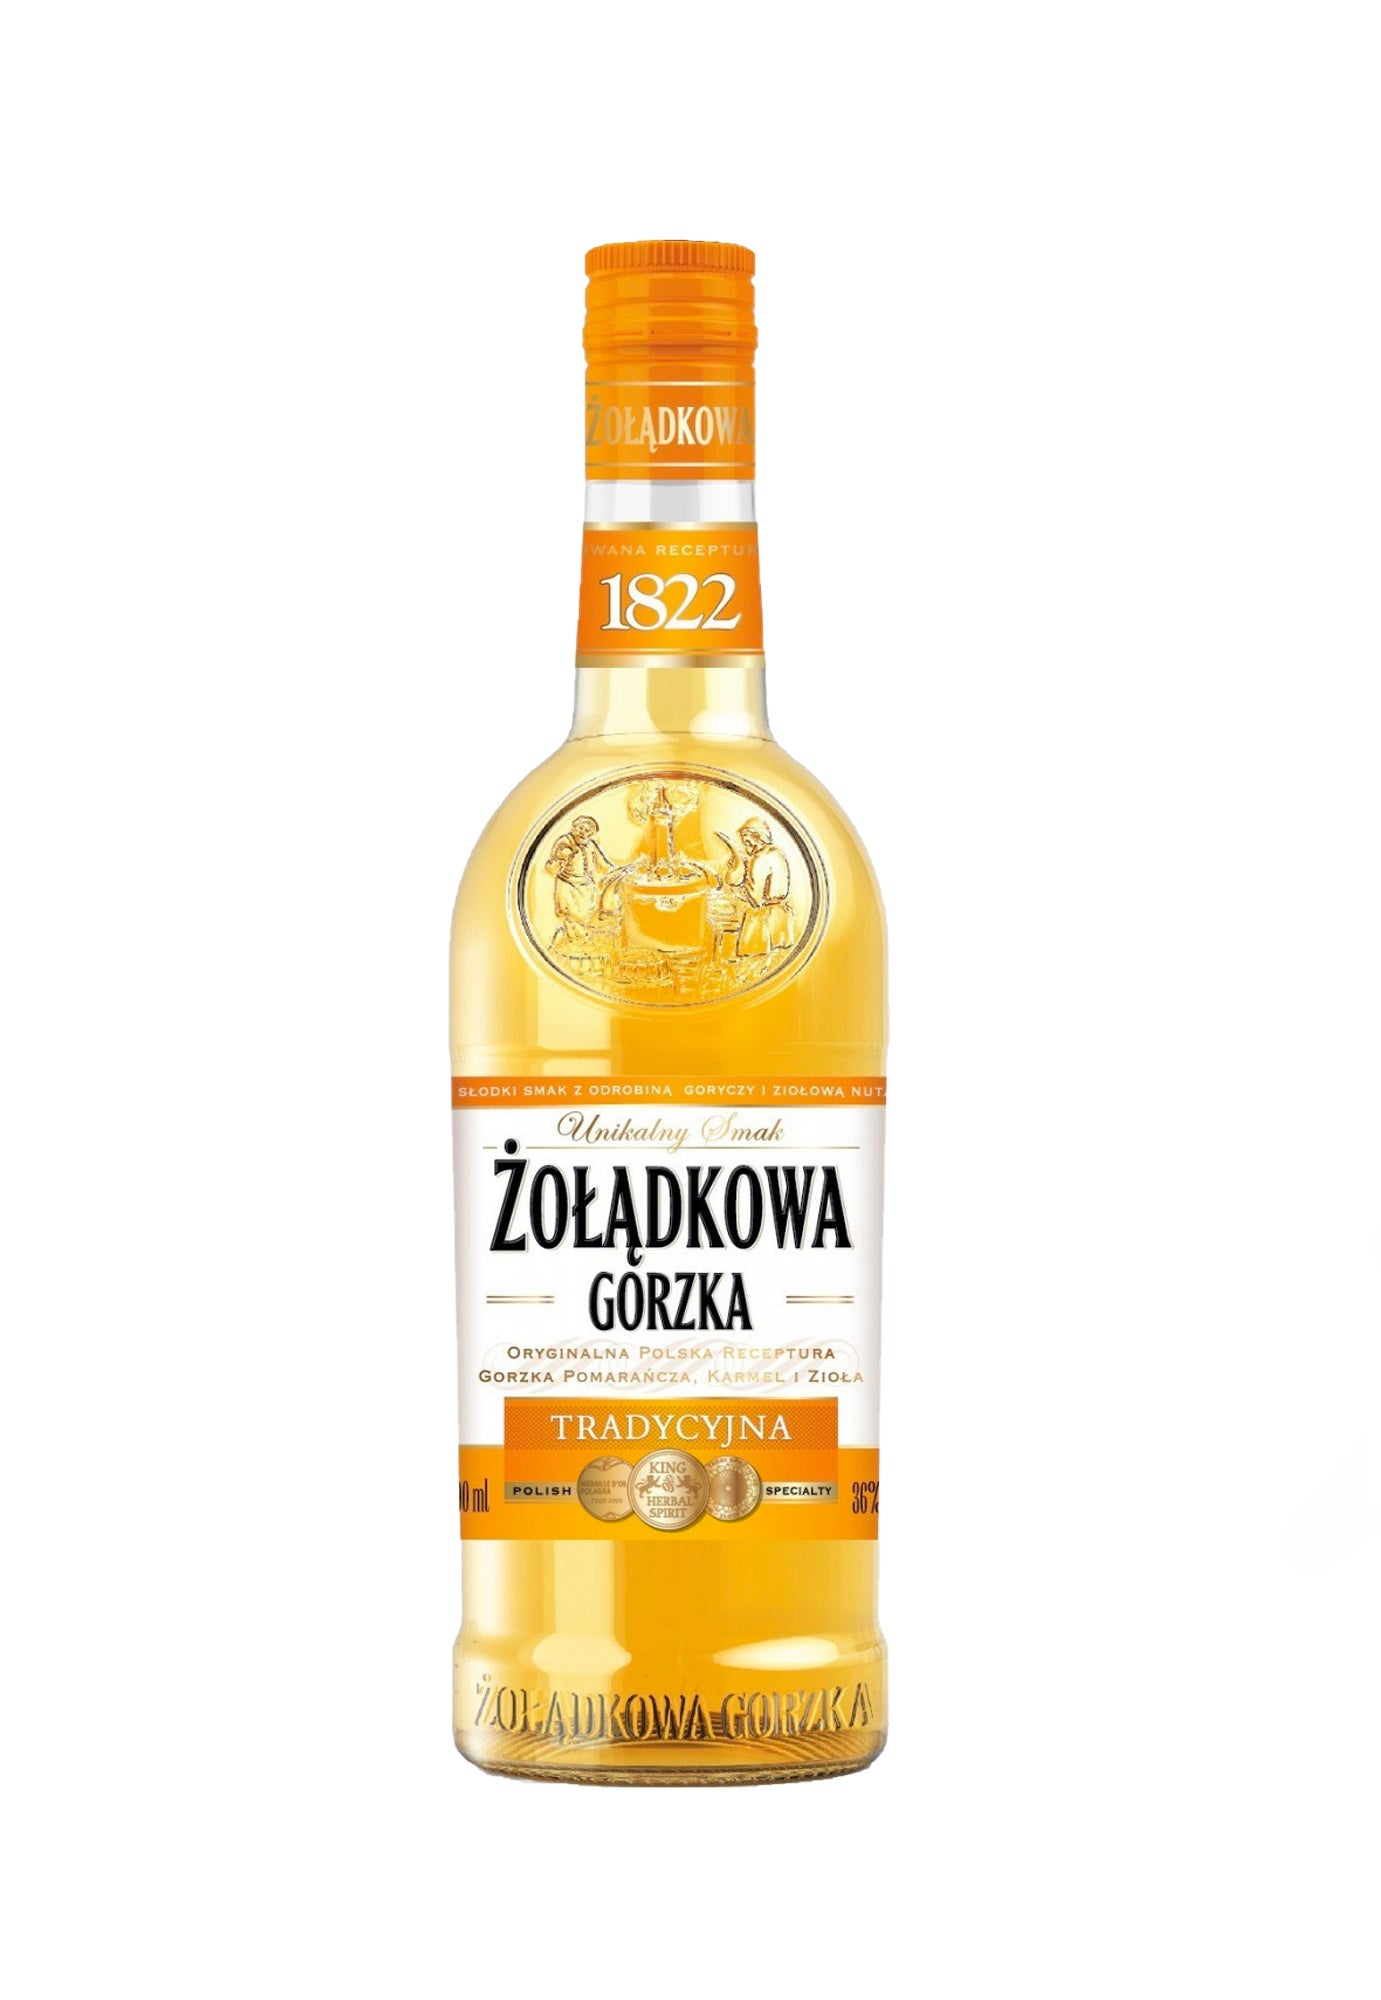 Wodka Zoladkowa Gorzka Traditional Vodka